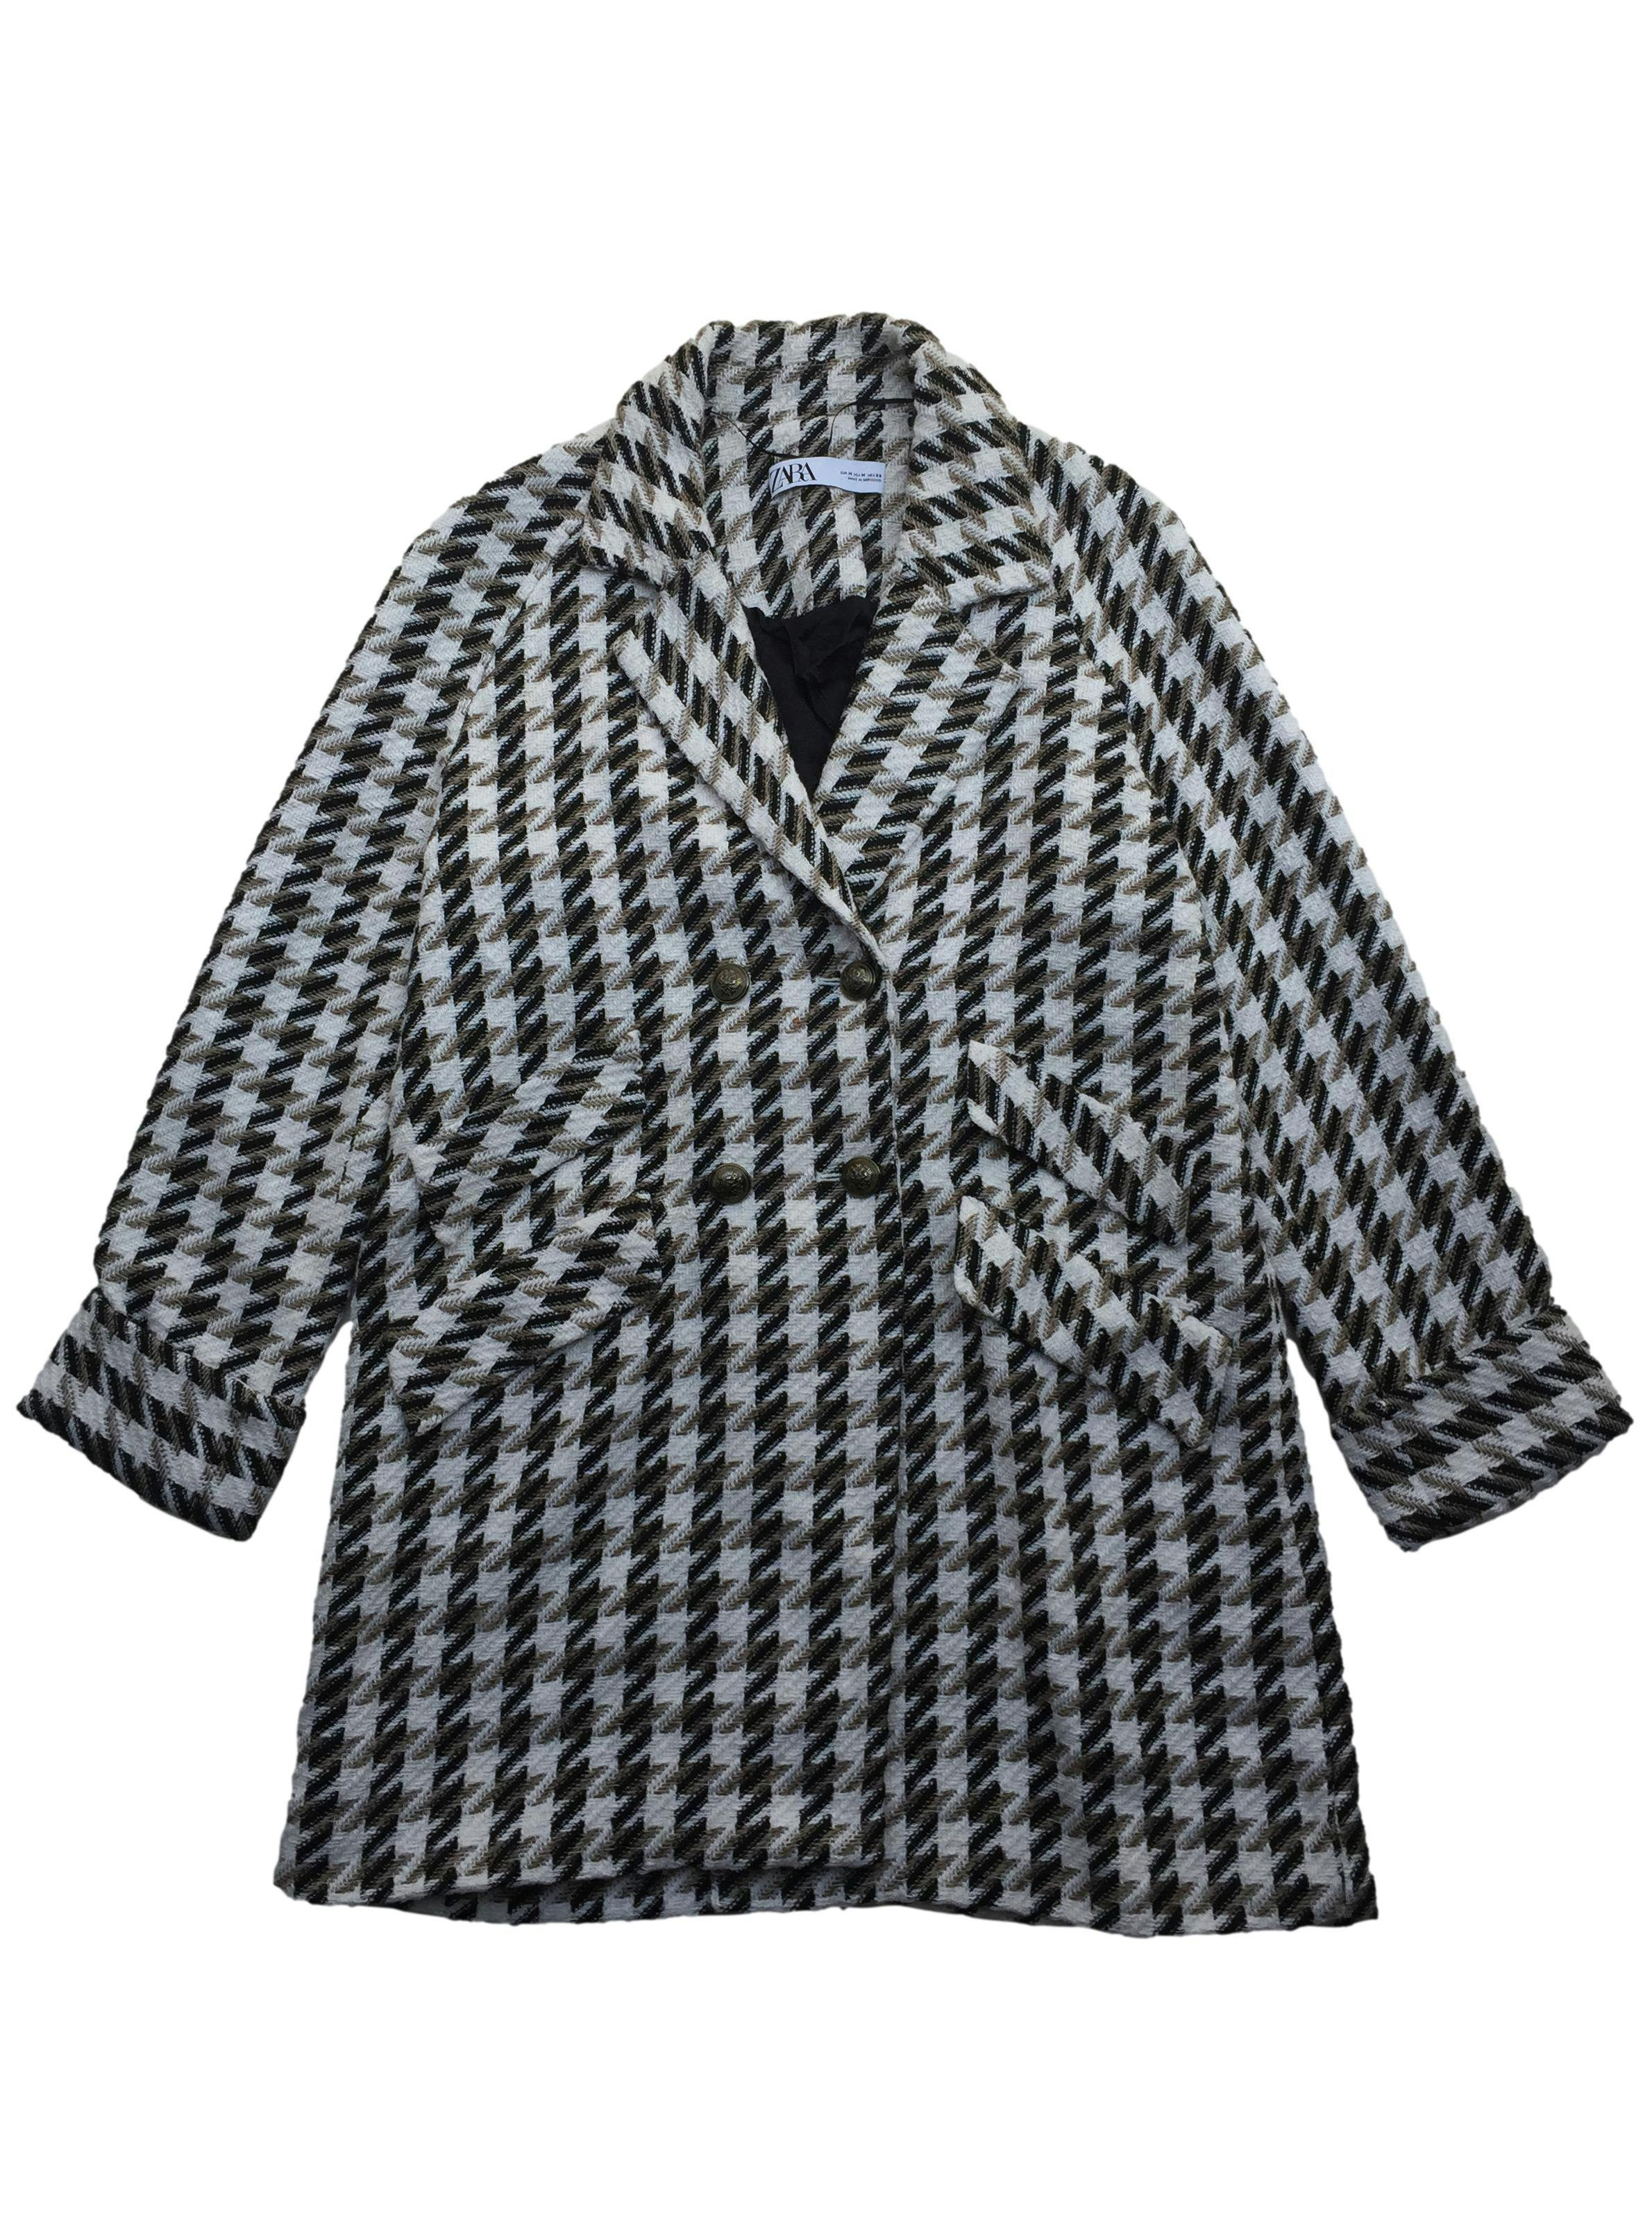 Abrigo Zara de tweed crema negro y marrón, corte oversized, doble fila de botones y bolsillos. Busto 110cm Largo 90cm